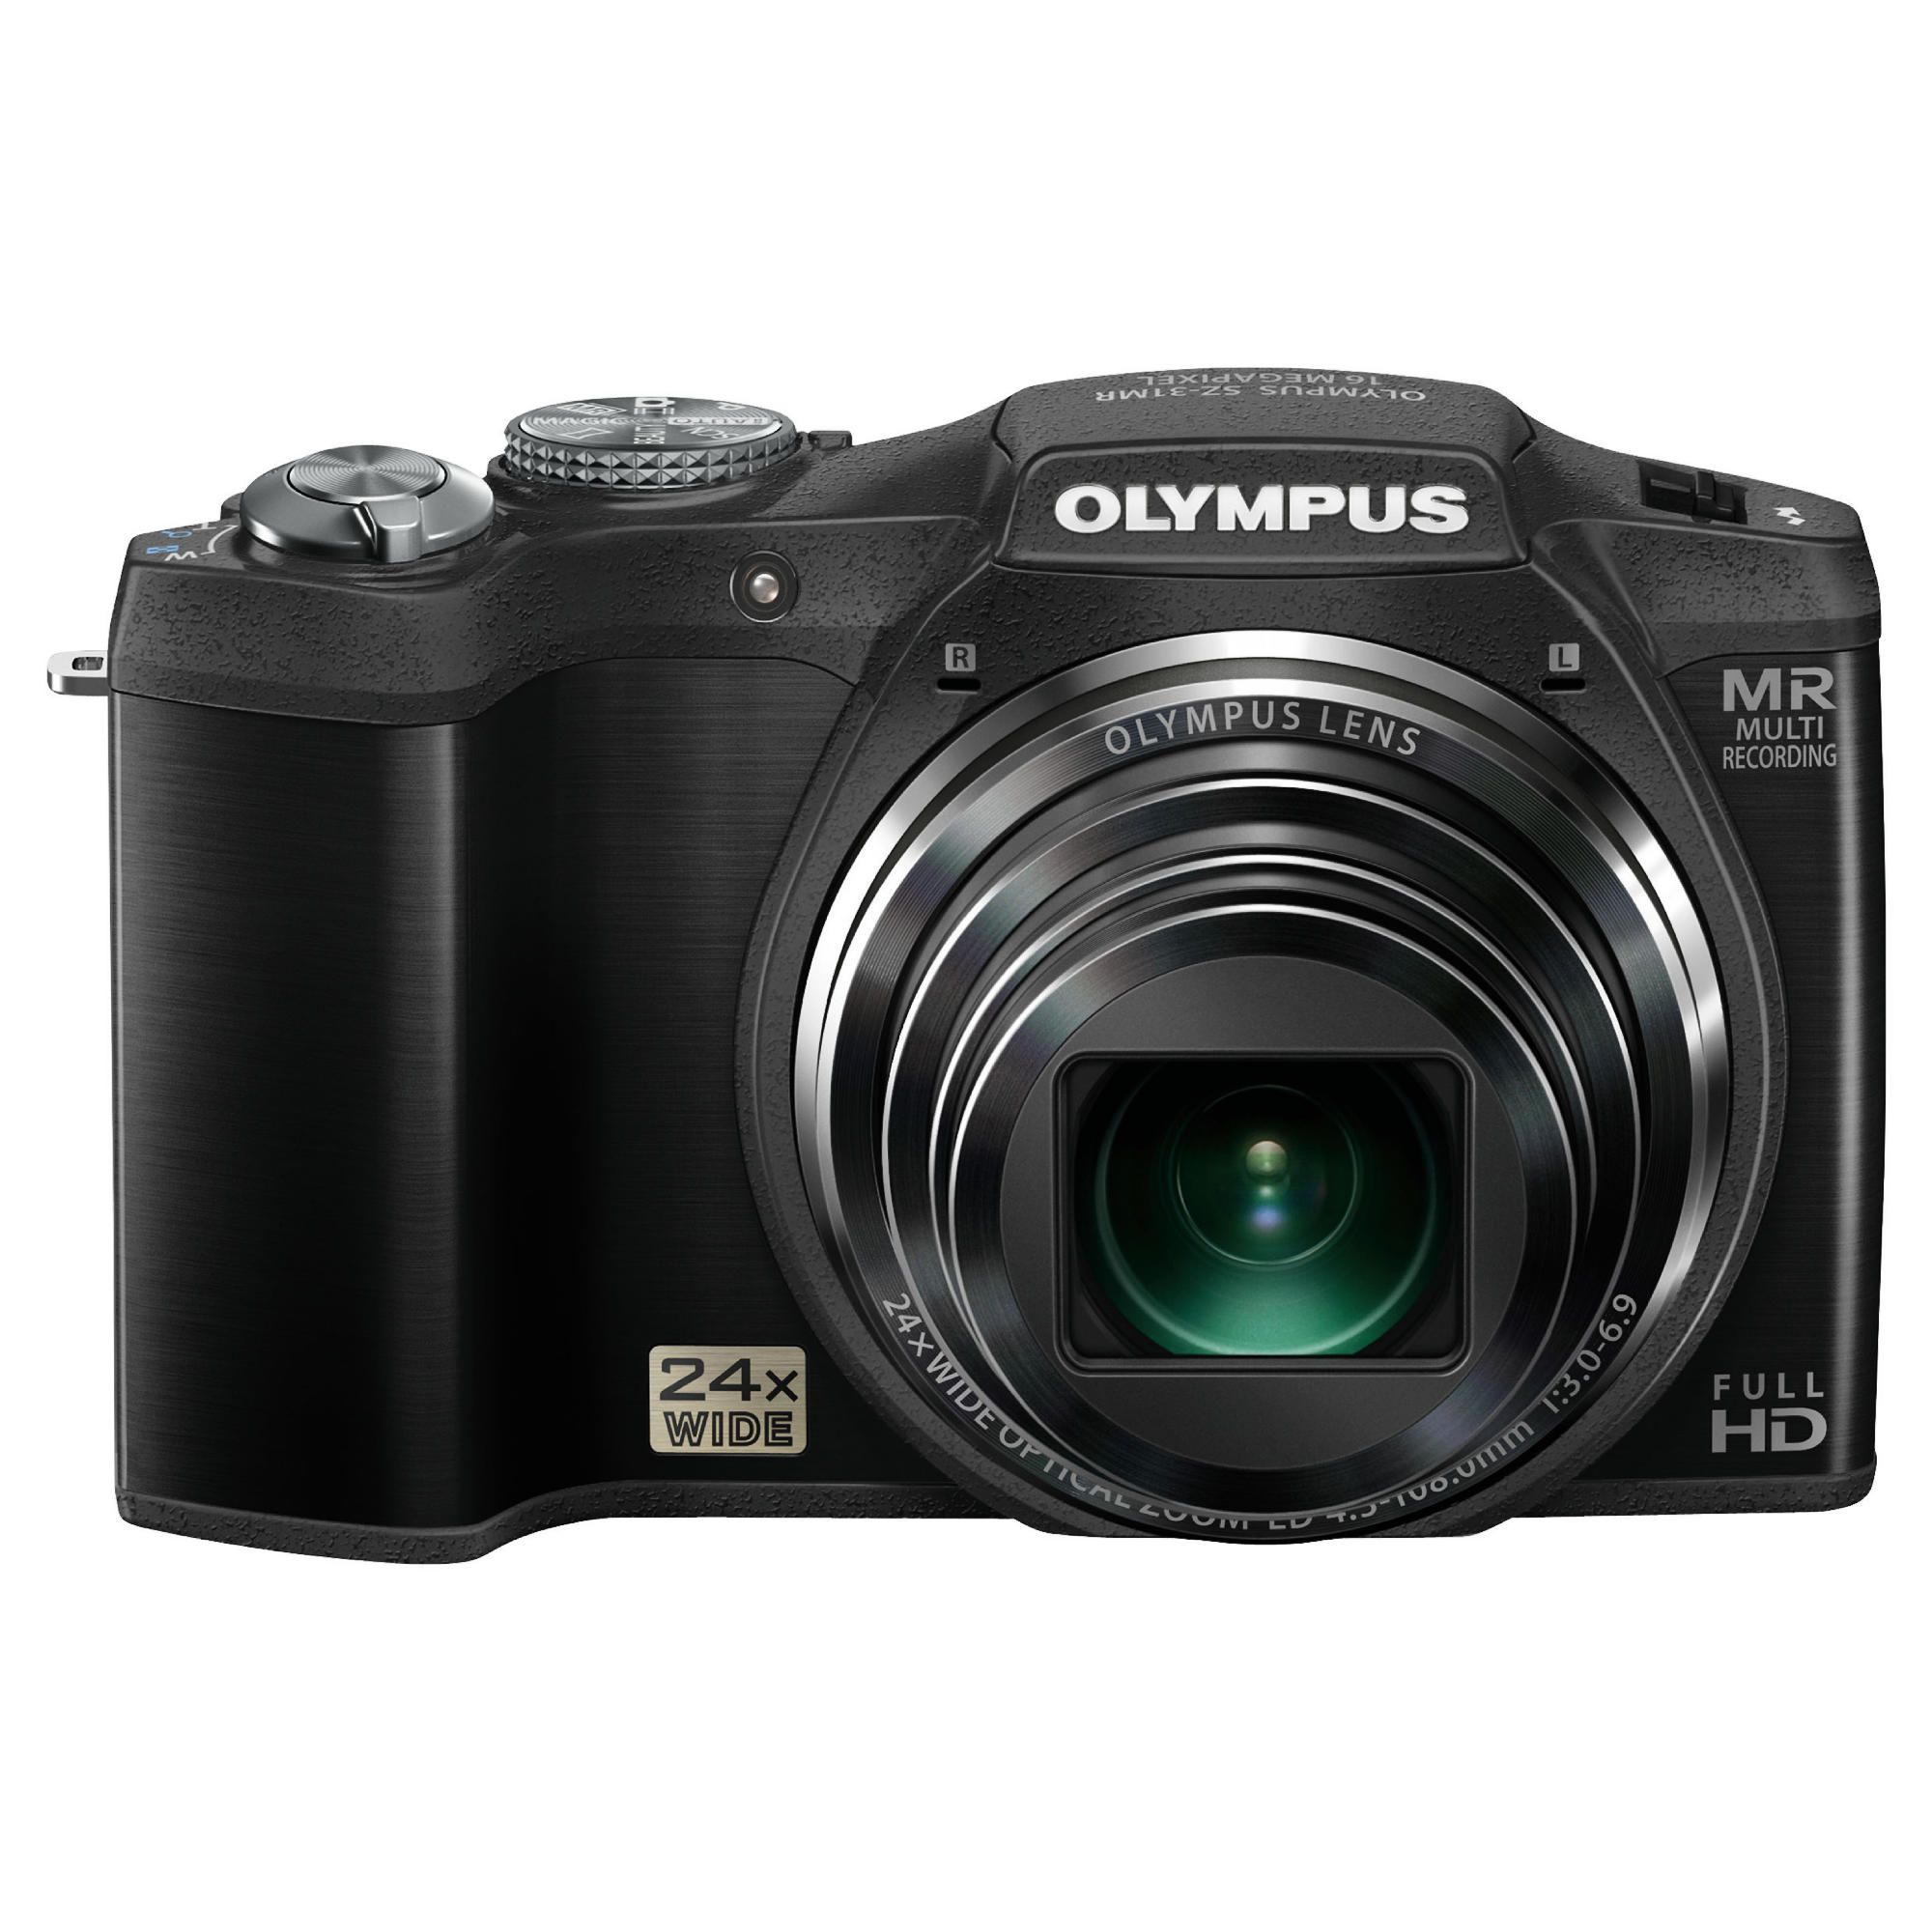 Olympus SZ-31 Digital Camera (Black)